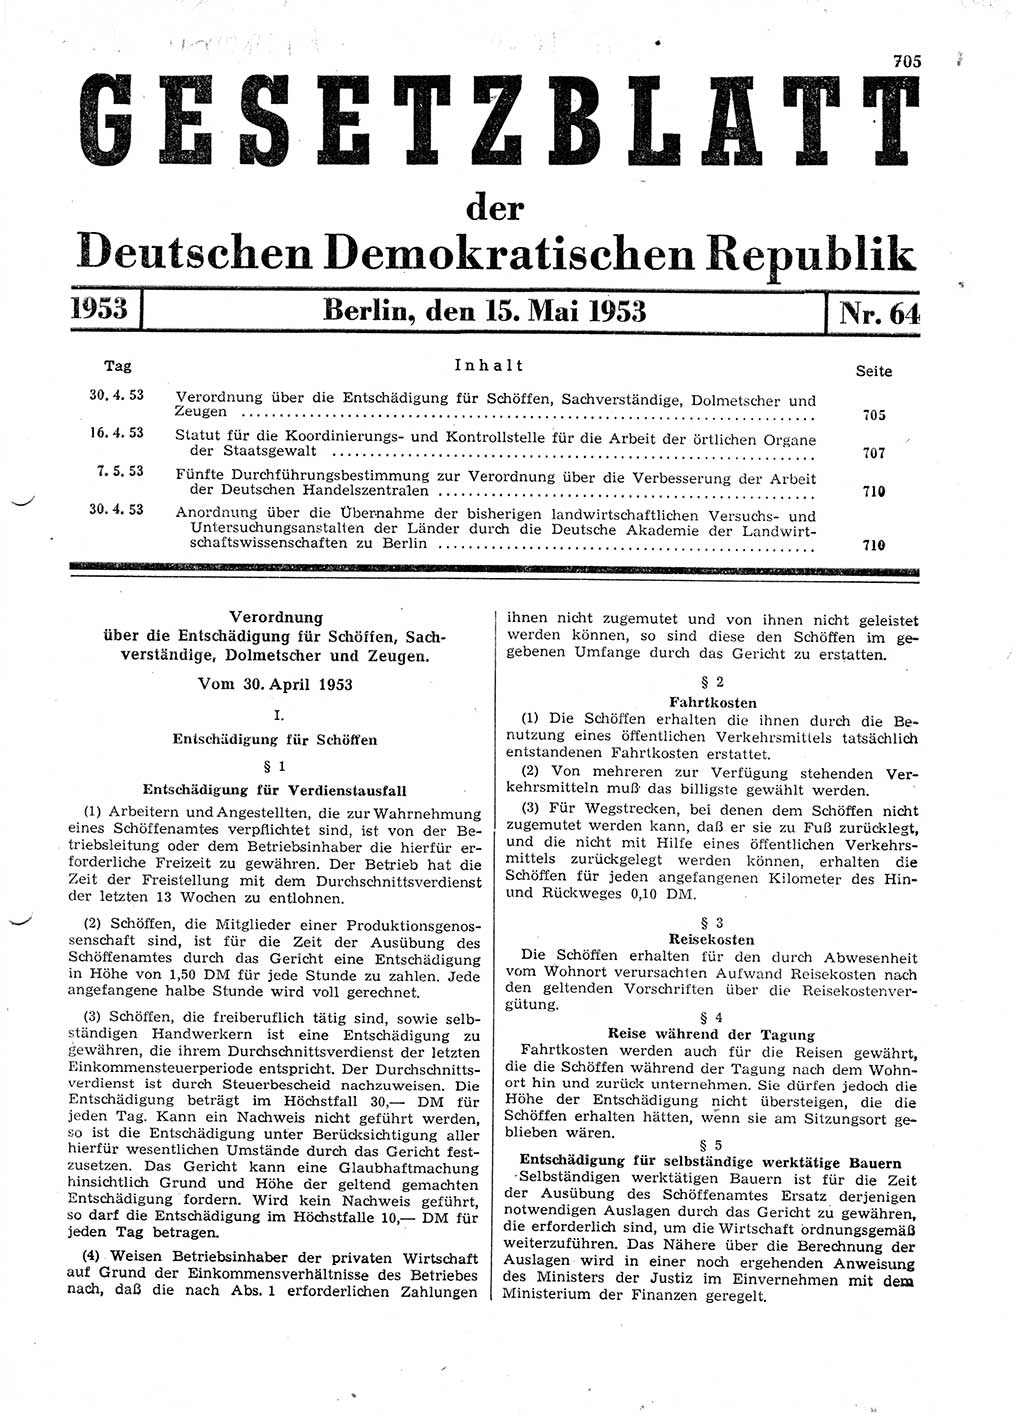 Gesetzblatt (GBl.) der Deutschen Demokratischen Republik (DDR) 1953, Seite 705 (GBl. DDR 1953, S. 705)